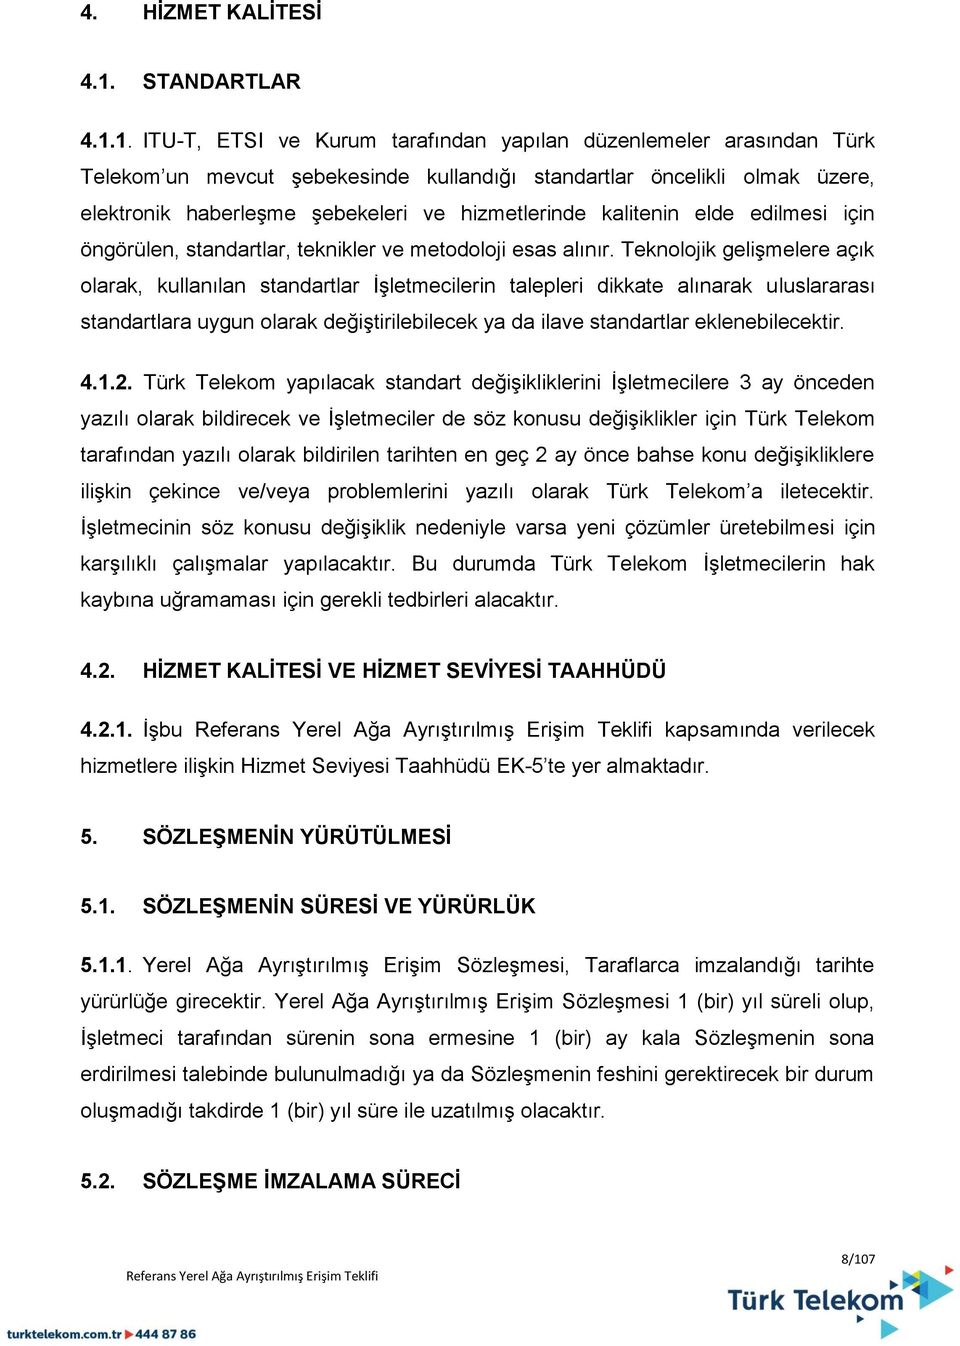 1. ITU-T, ETSI ve Kurum tarafından yapılan düzenlemeler arasından Türk Telekom un mevcut şebekesinde kullandığı standartlar öncelikli olmak üzere, elektronik haberleşme şebekeleri ve hizmetlerinde